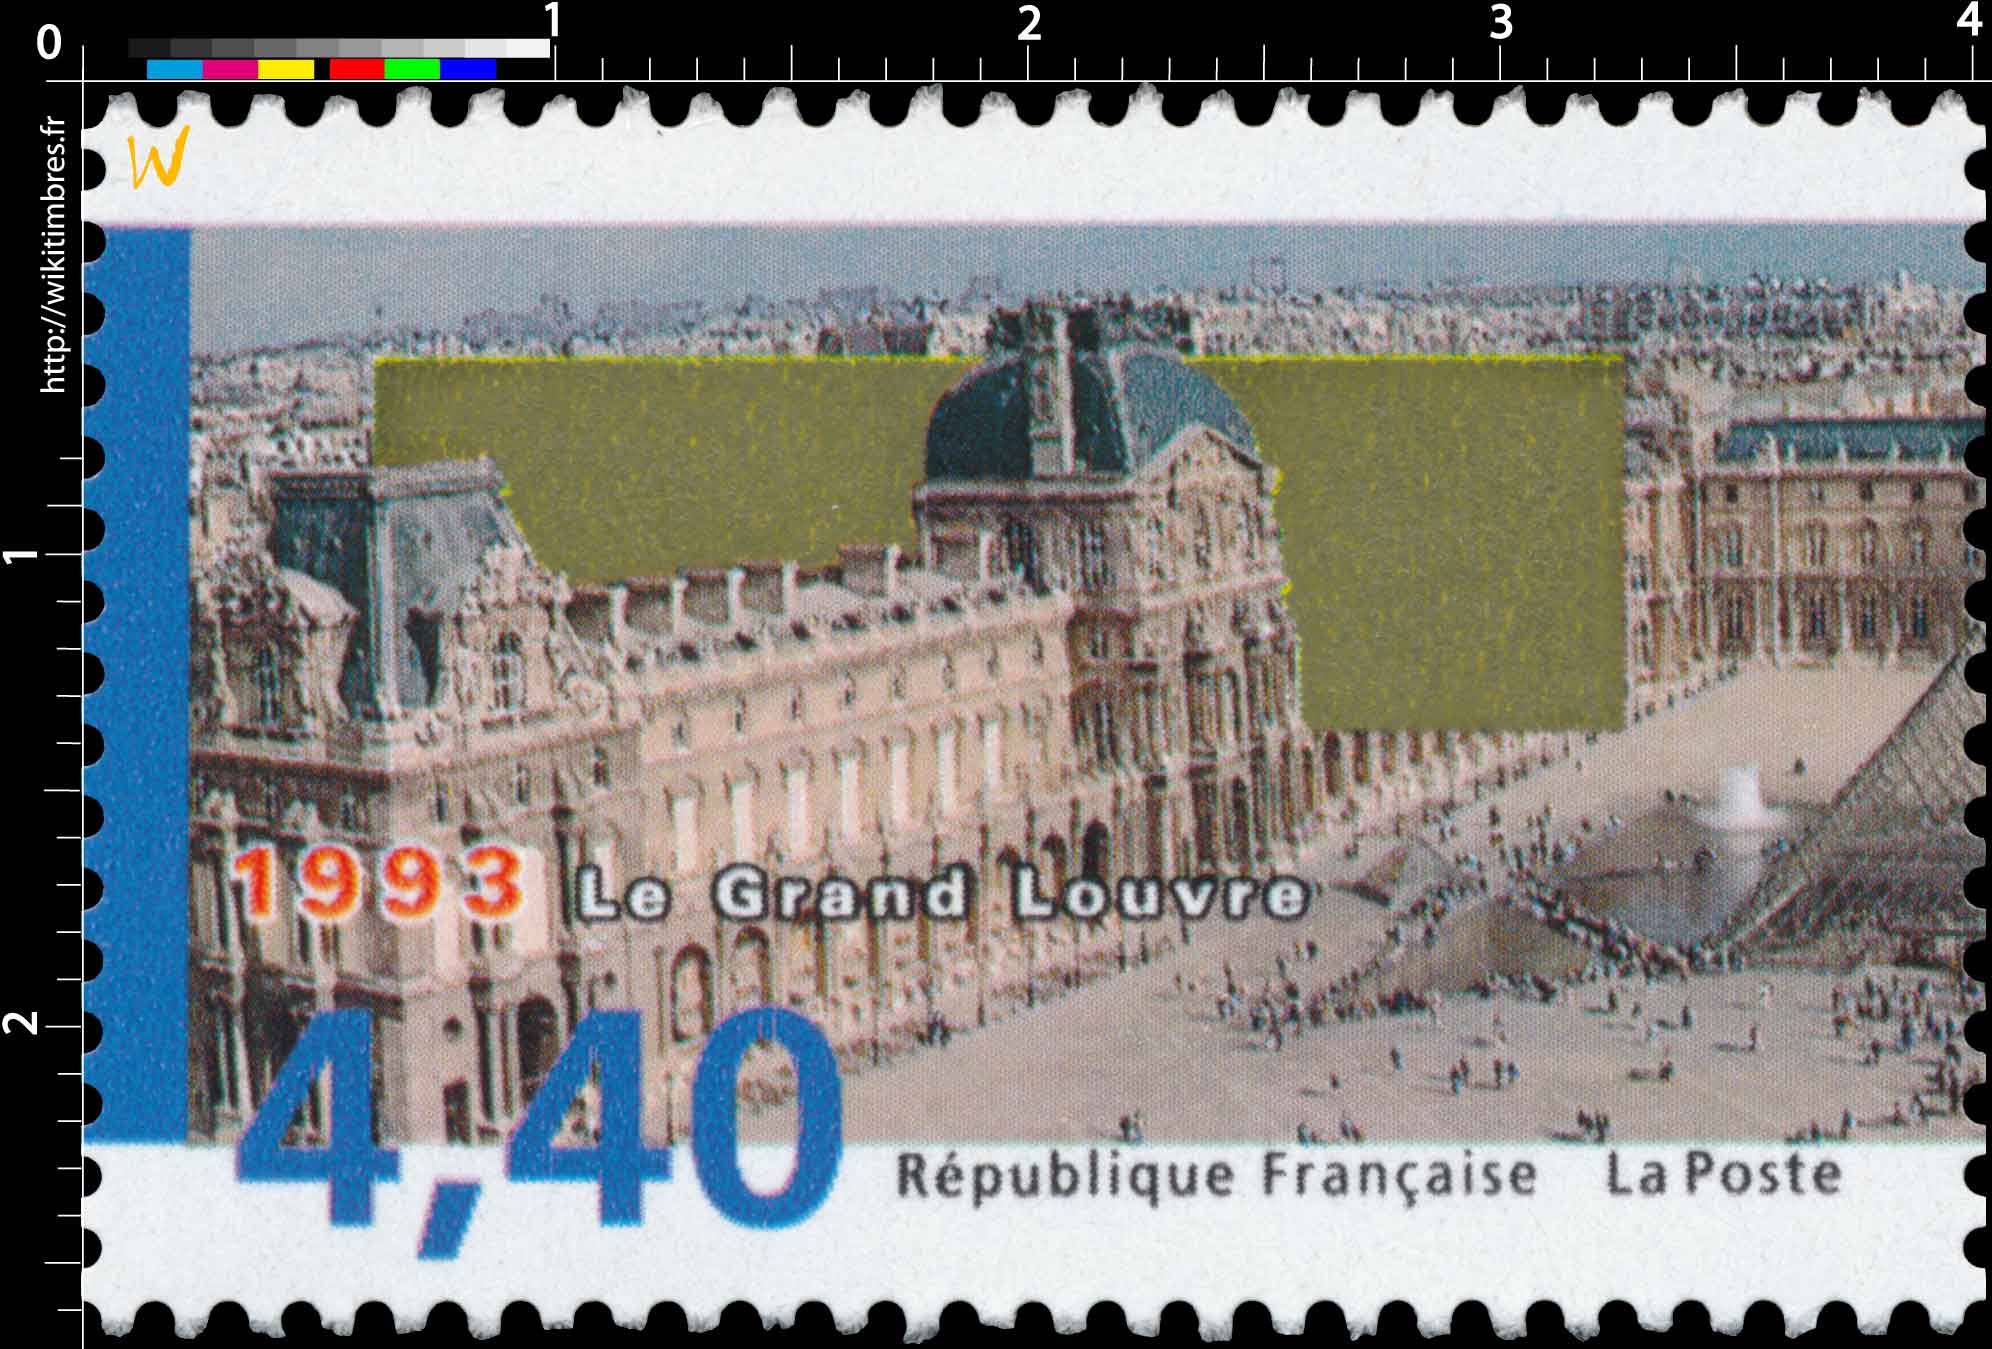 1993 Le Grand Louvre